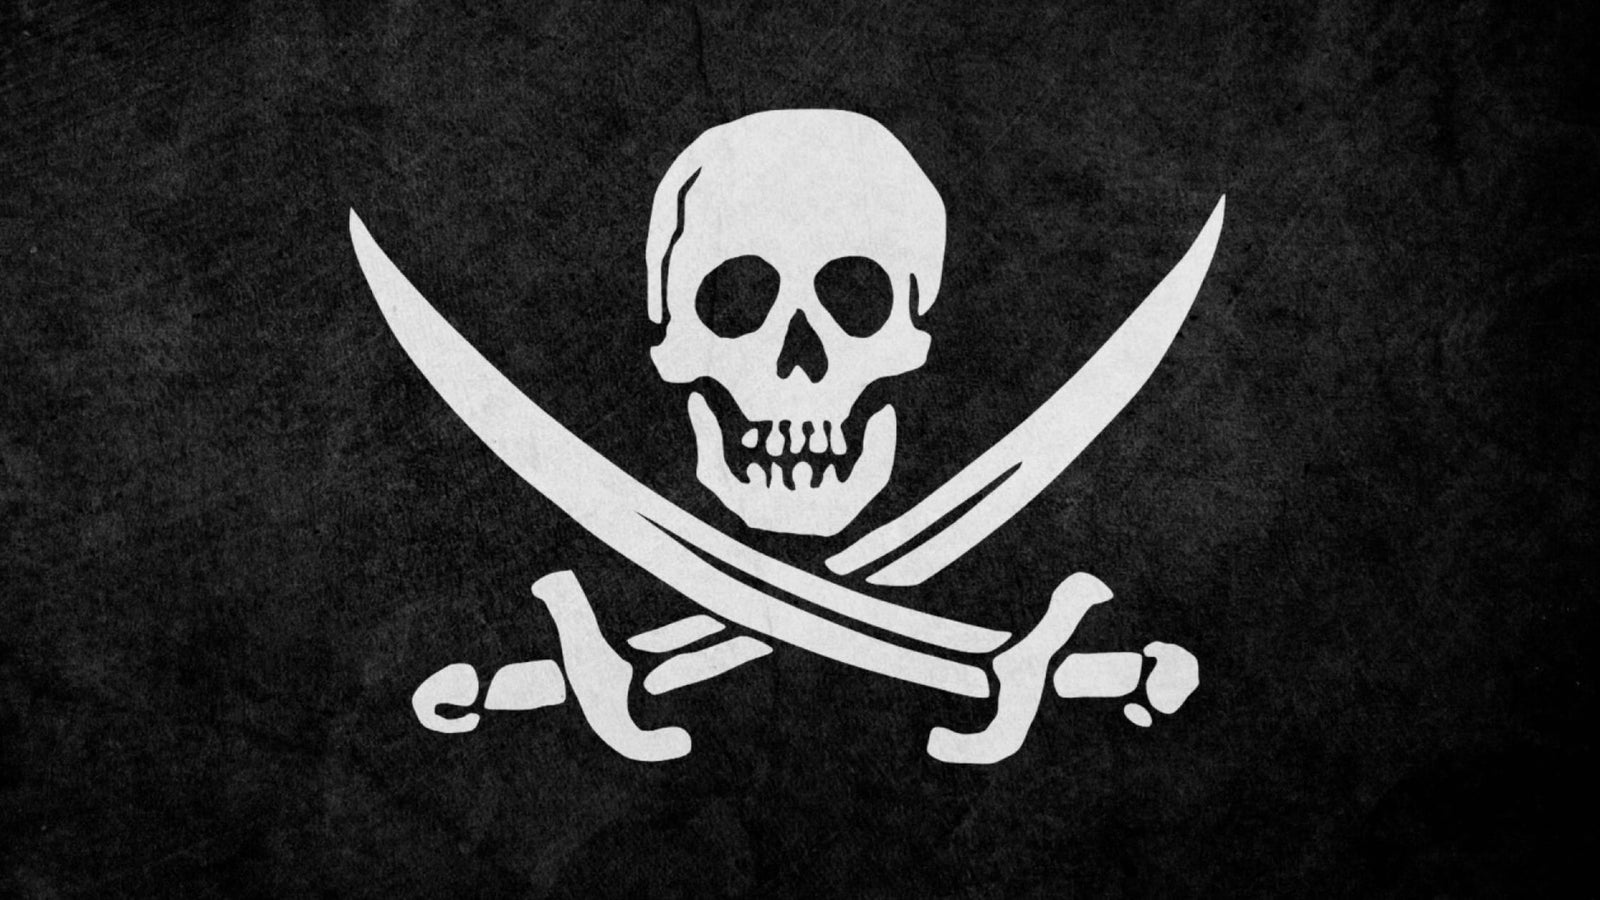 Drapeau Pirate Déchiré par les Combats, Jolly Roger